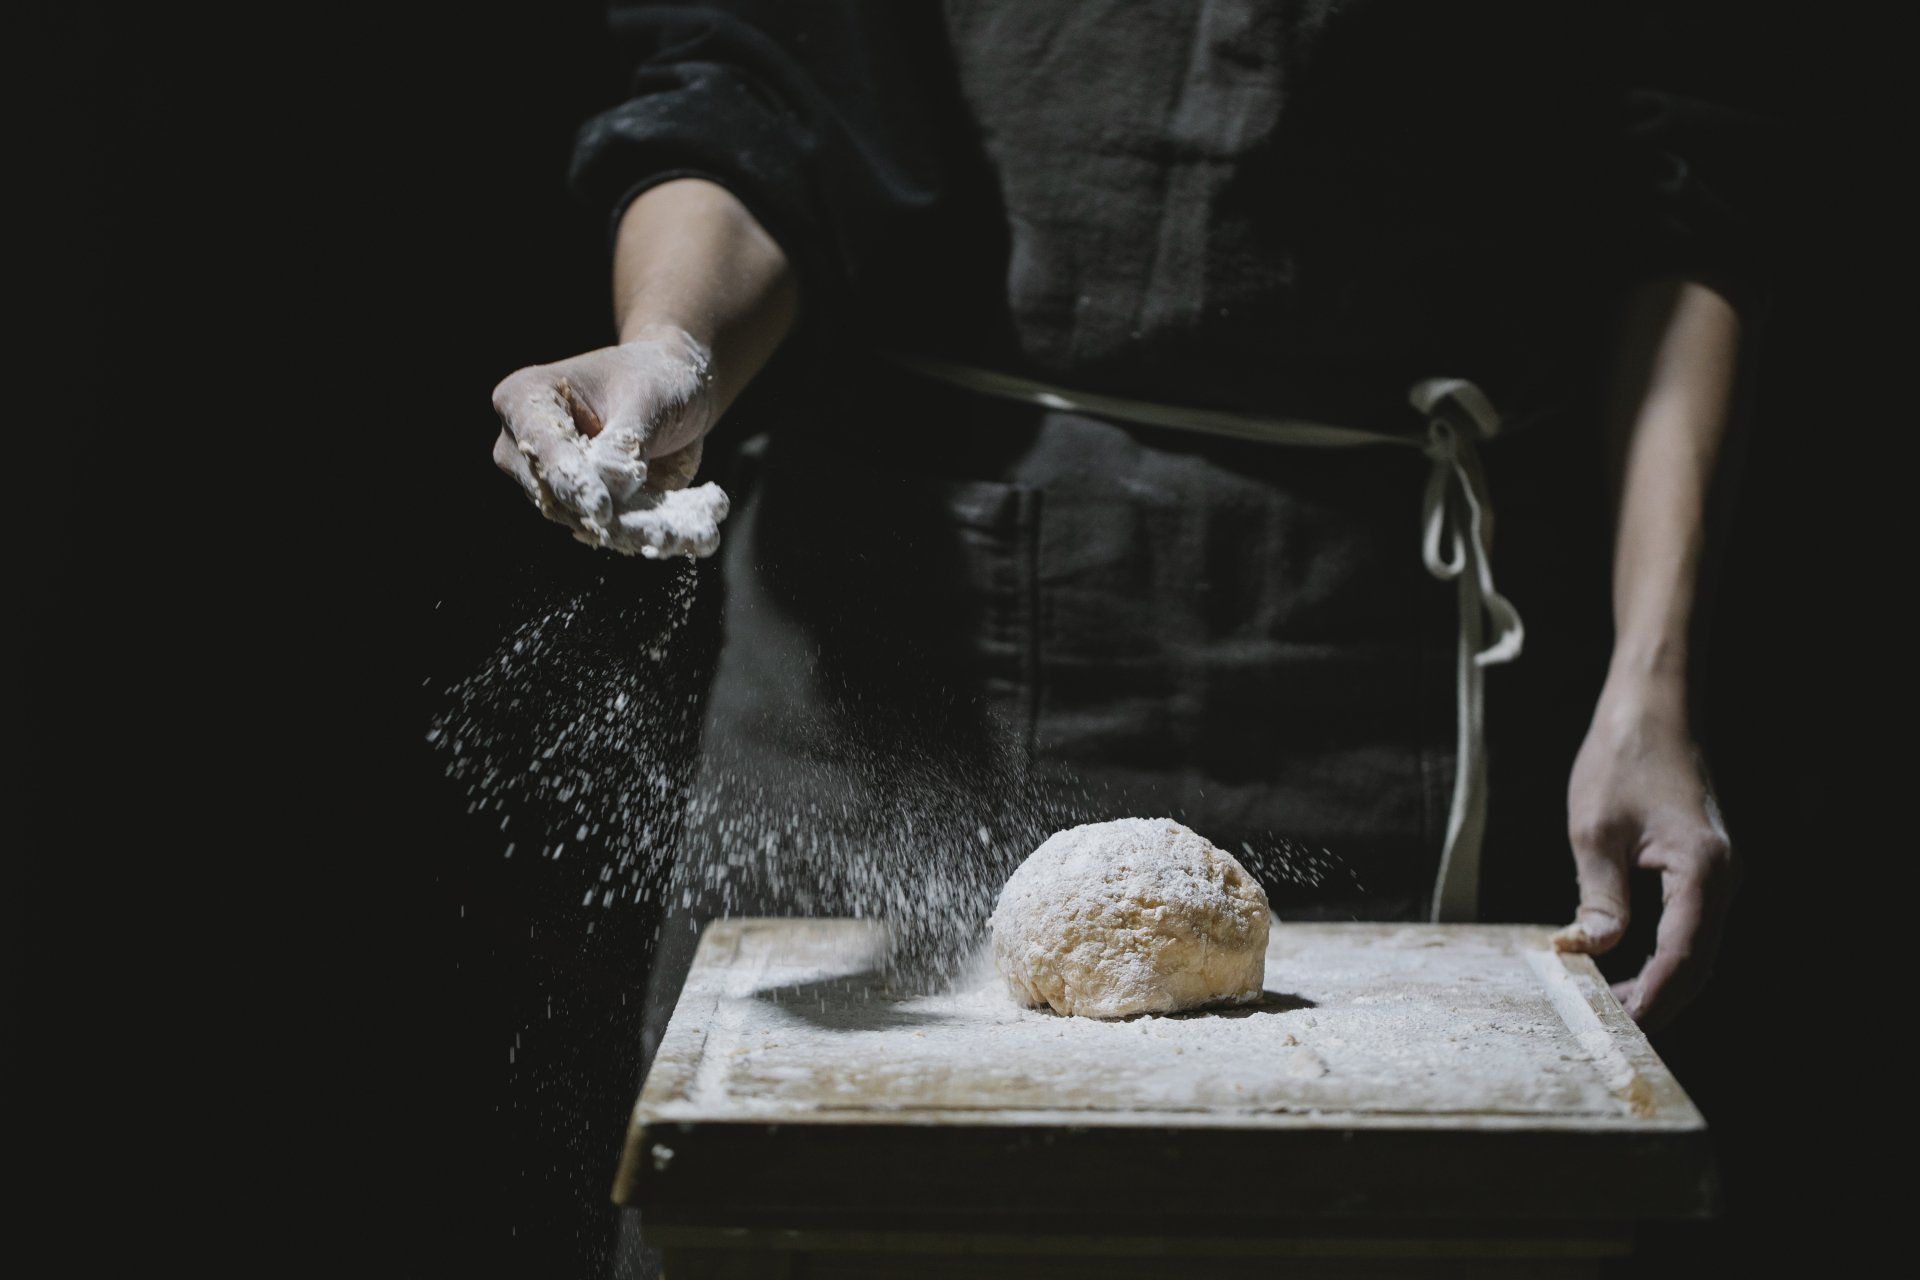 Uma pessoa está polvilhando farinha sobre uma massa sobre uma tábua de cortar.